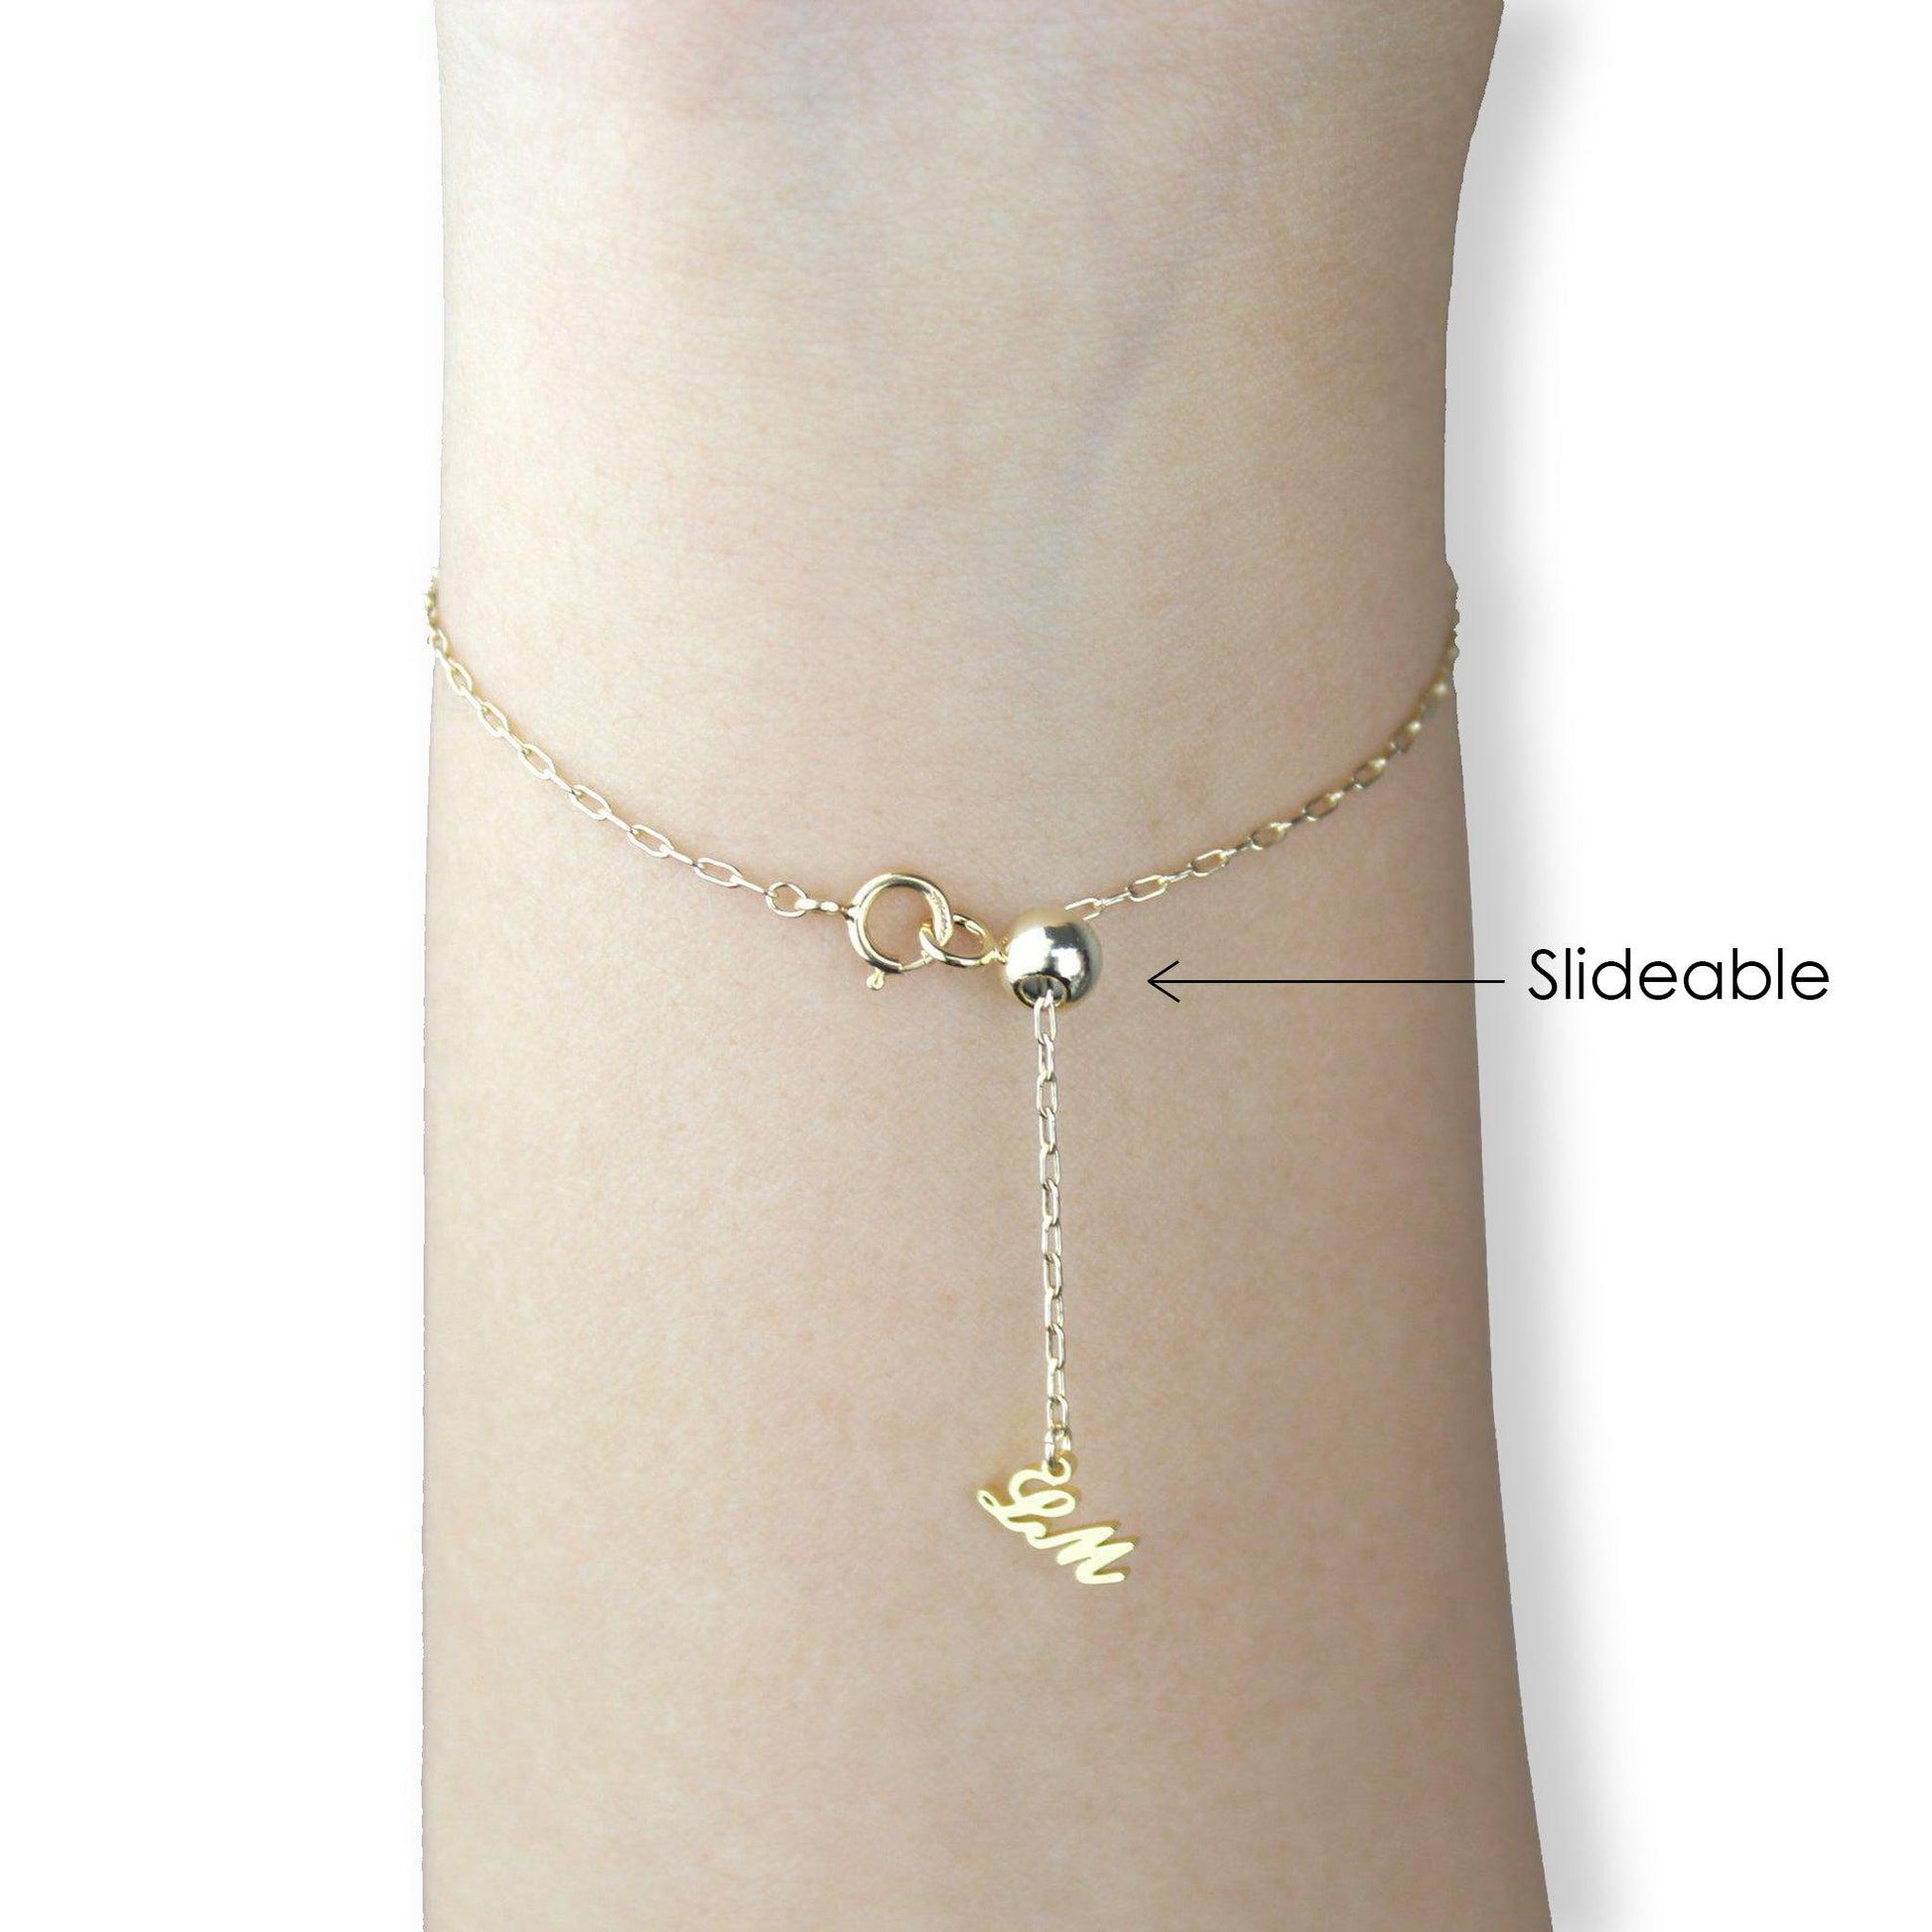 [Constellation] Taurus Necklace